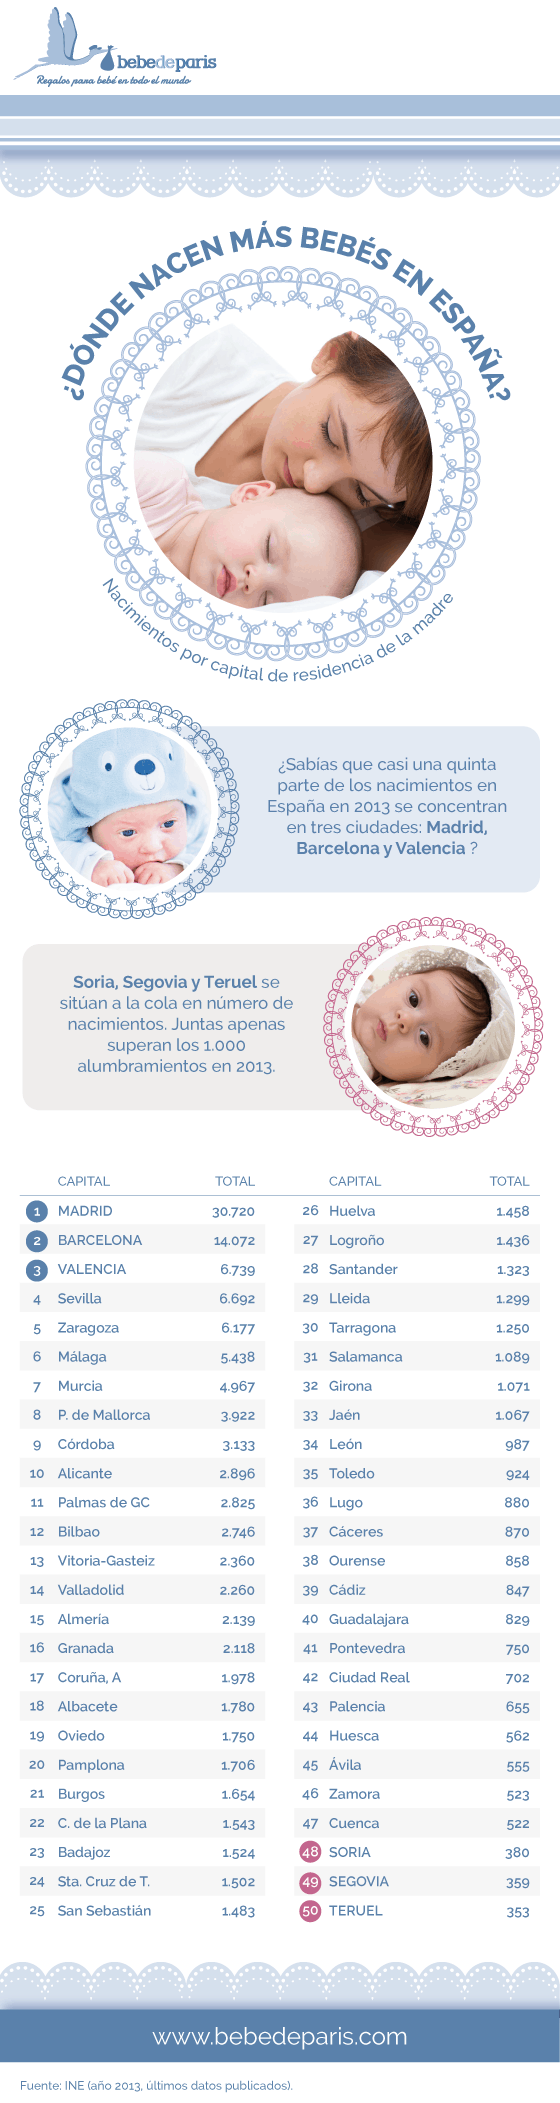 ¿Dónde nacen más bebés en el mundo